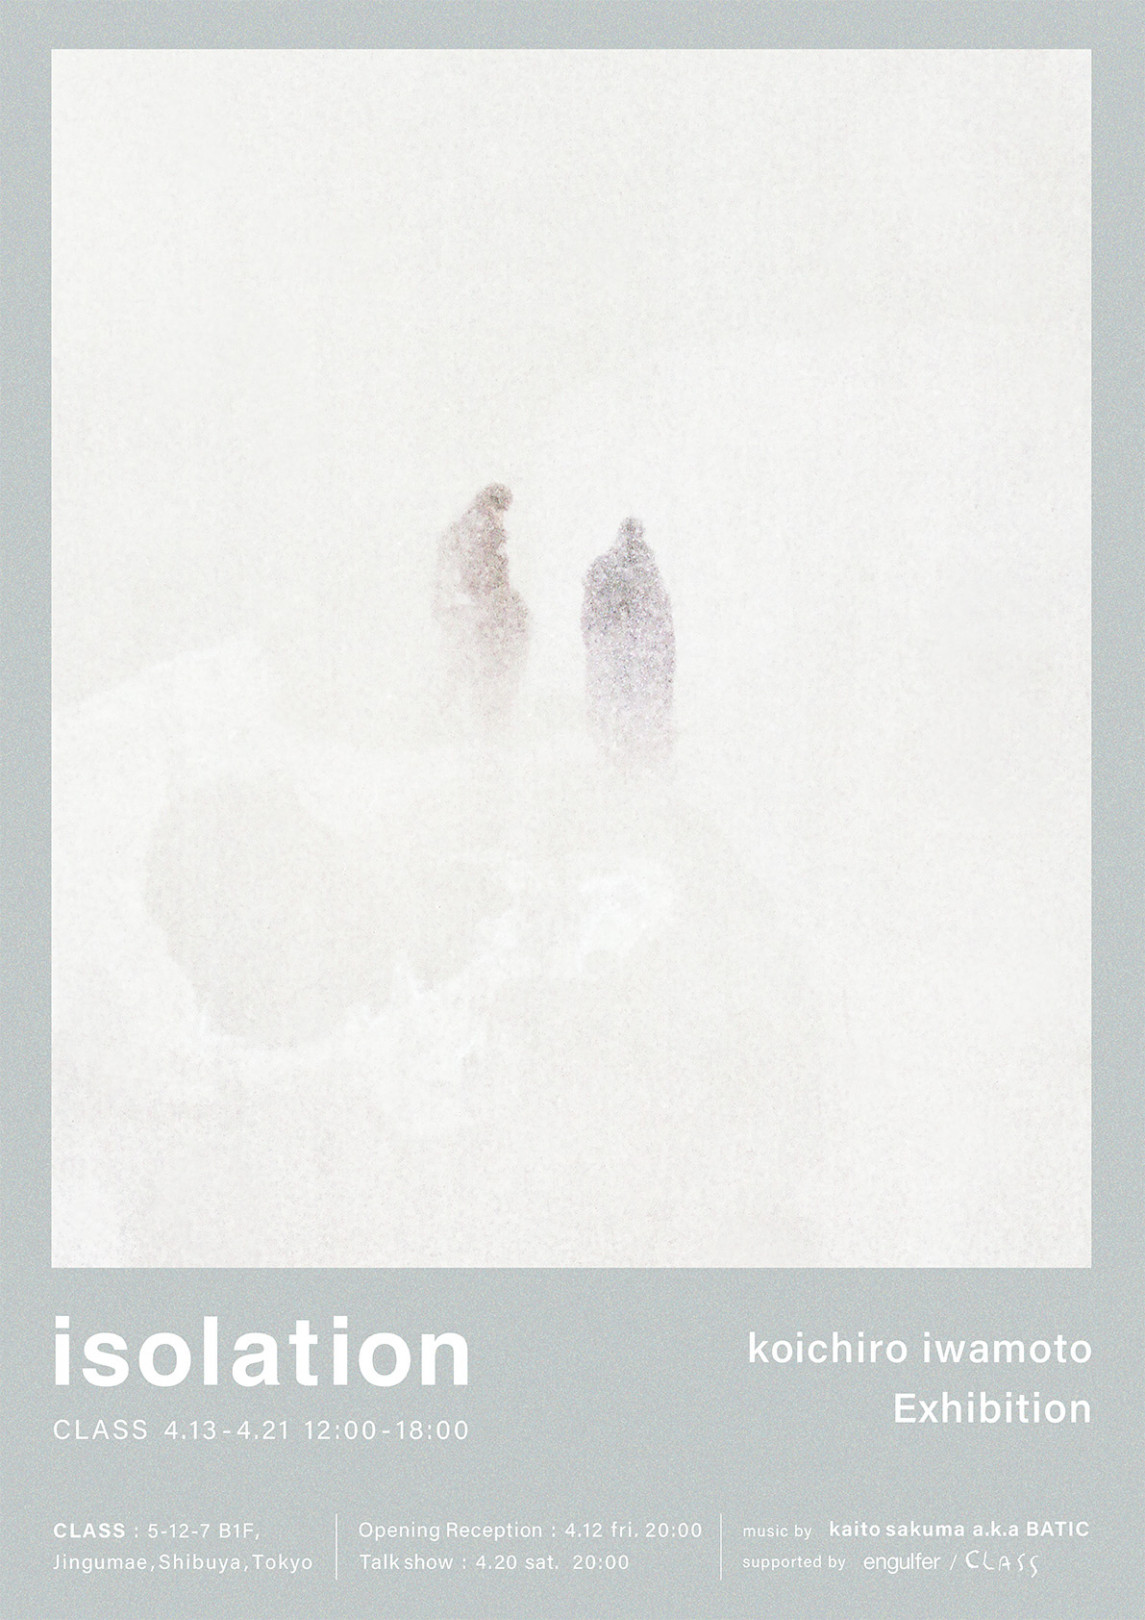 雪山で想いを馳せた遠い日の記憶、写真家 岩本幸一郎の個展が開催。『i-D Japan』編集者との対談も